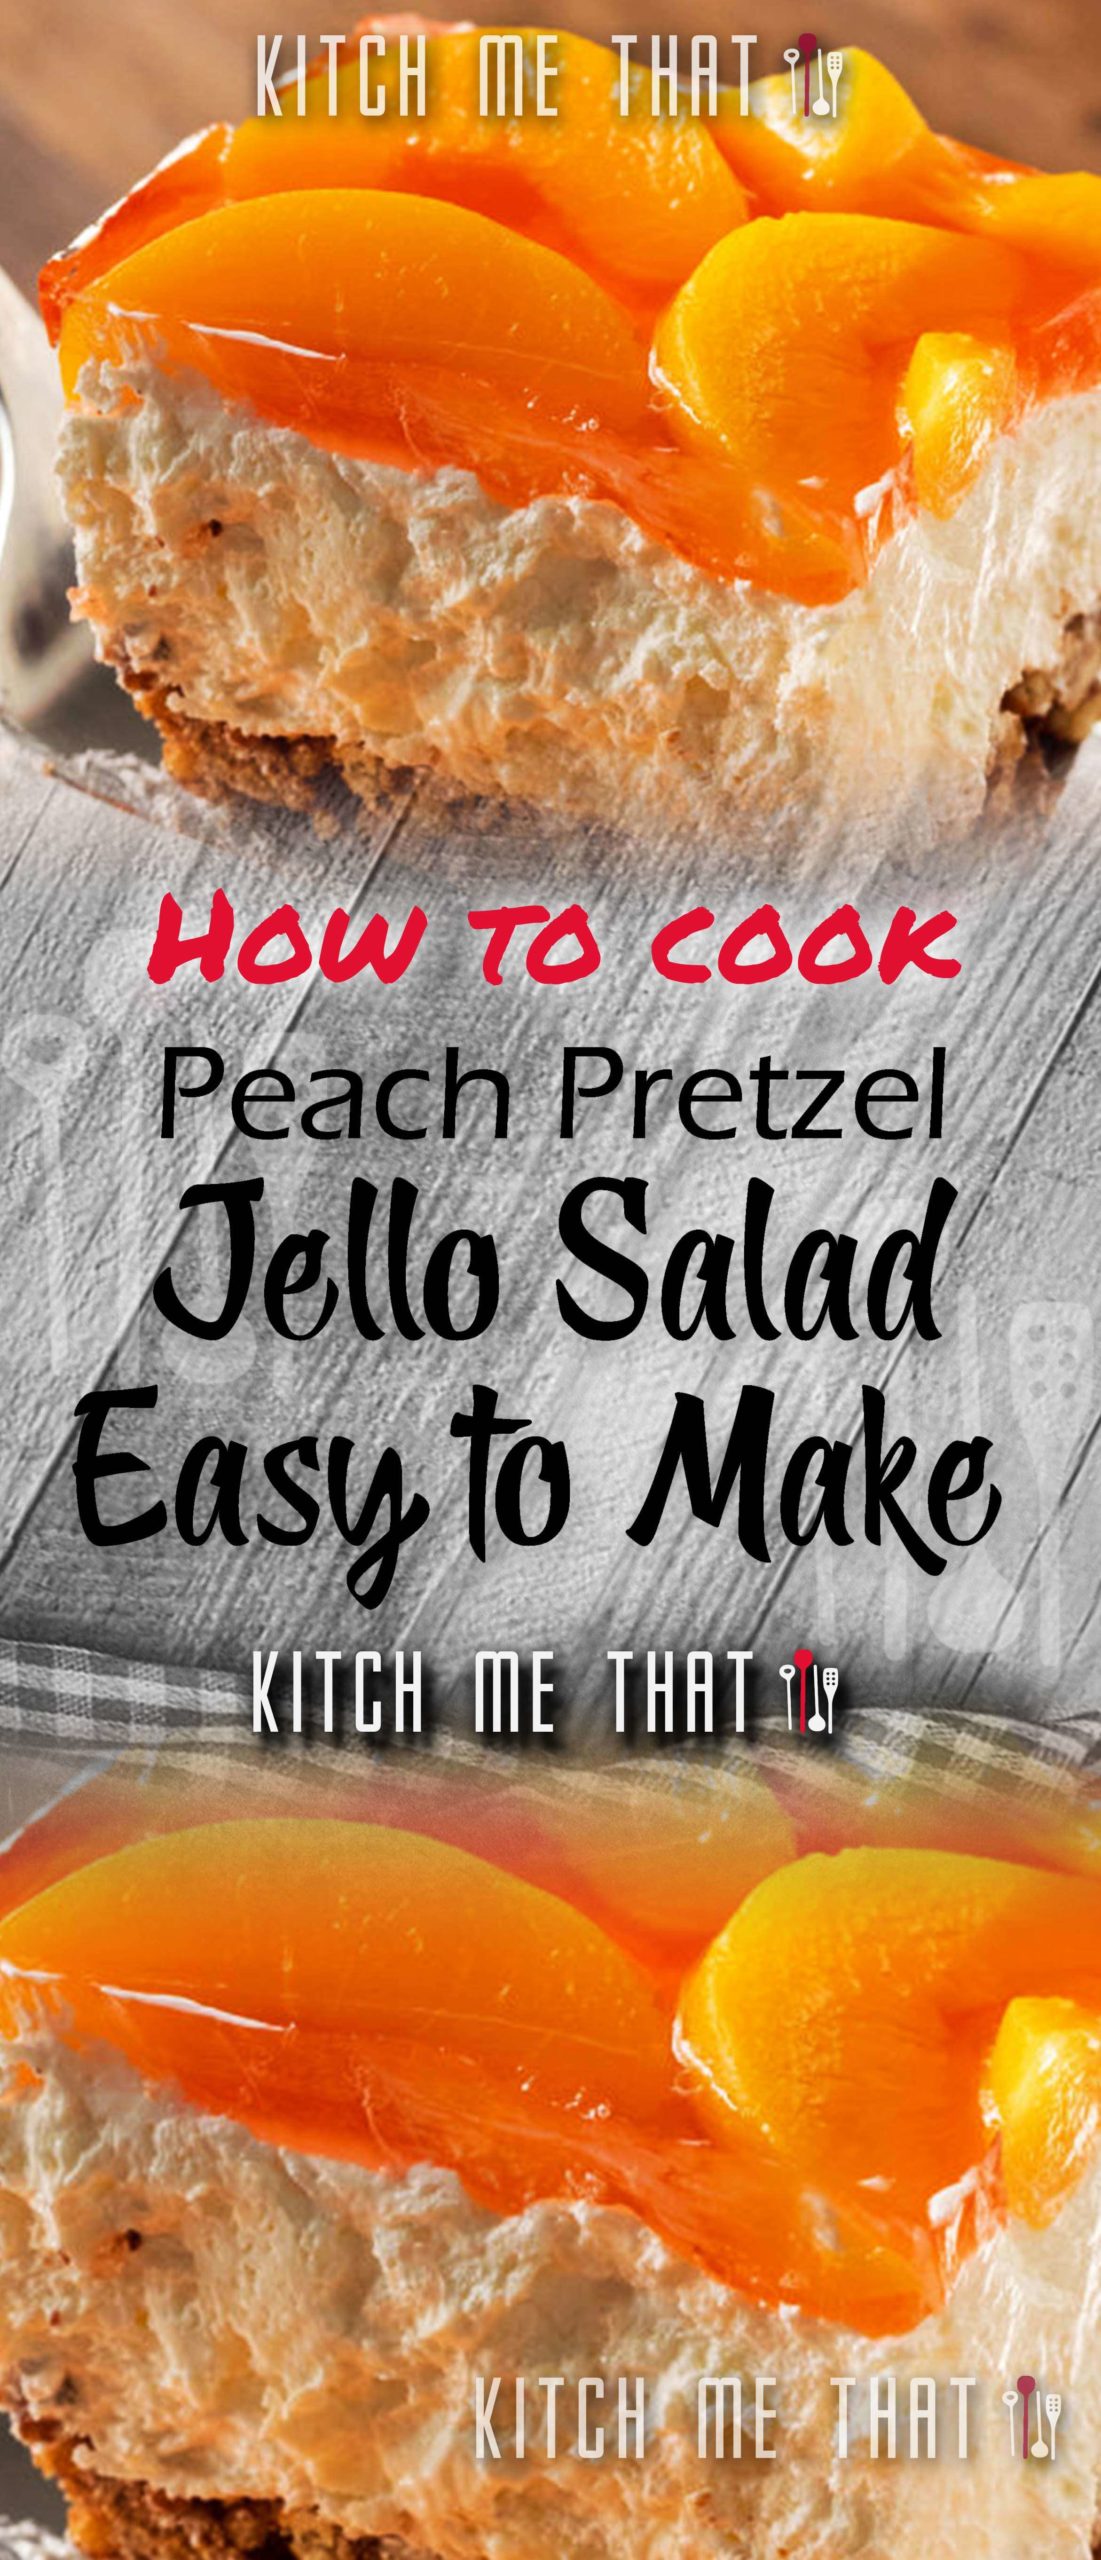 Peach Pretzel Jello Salad